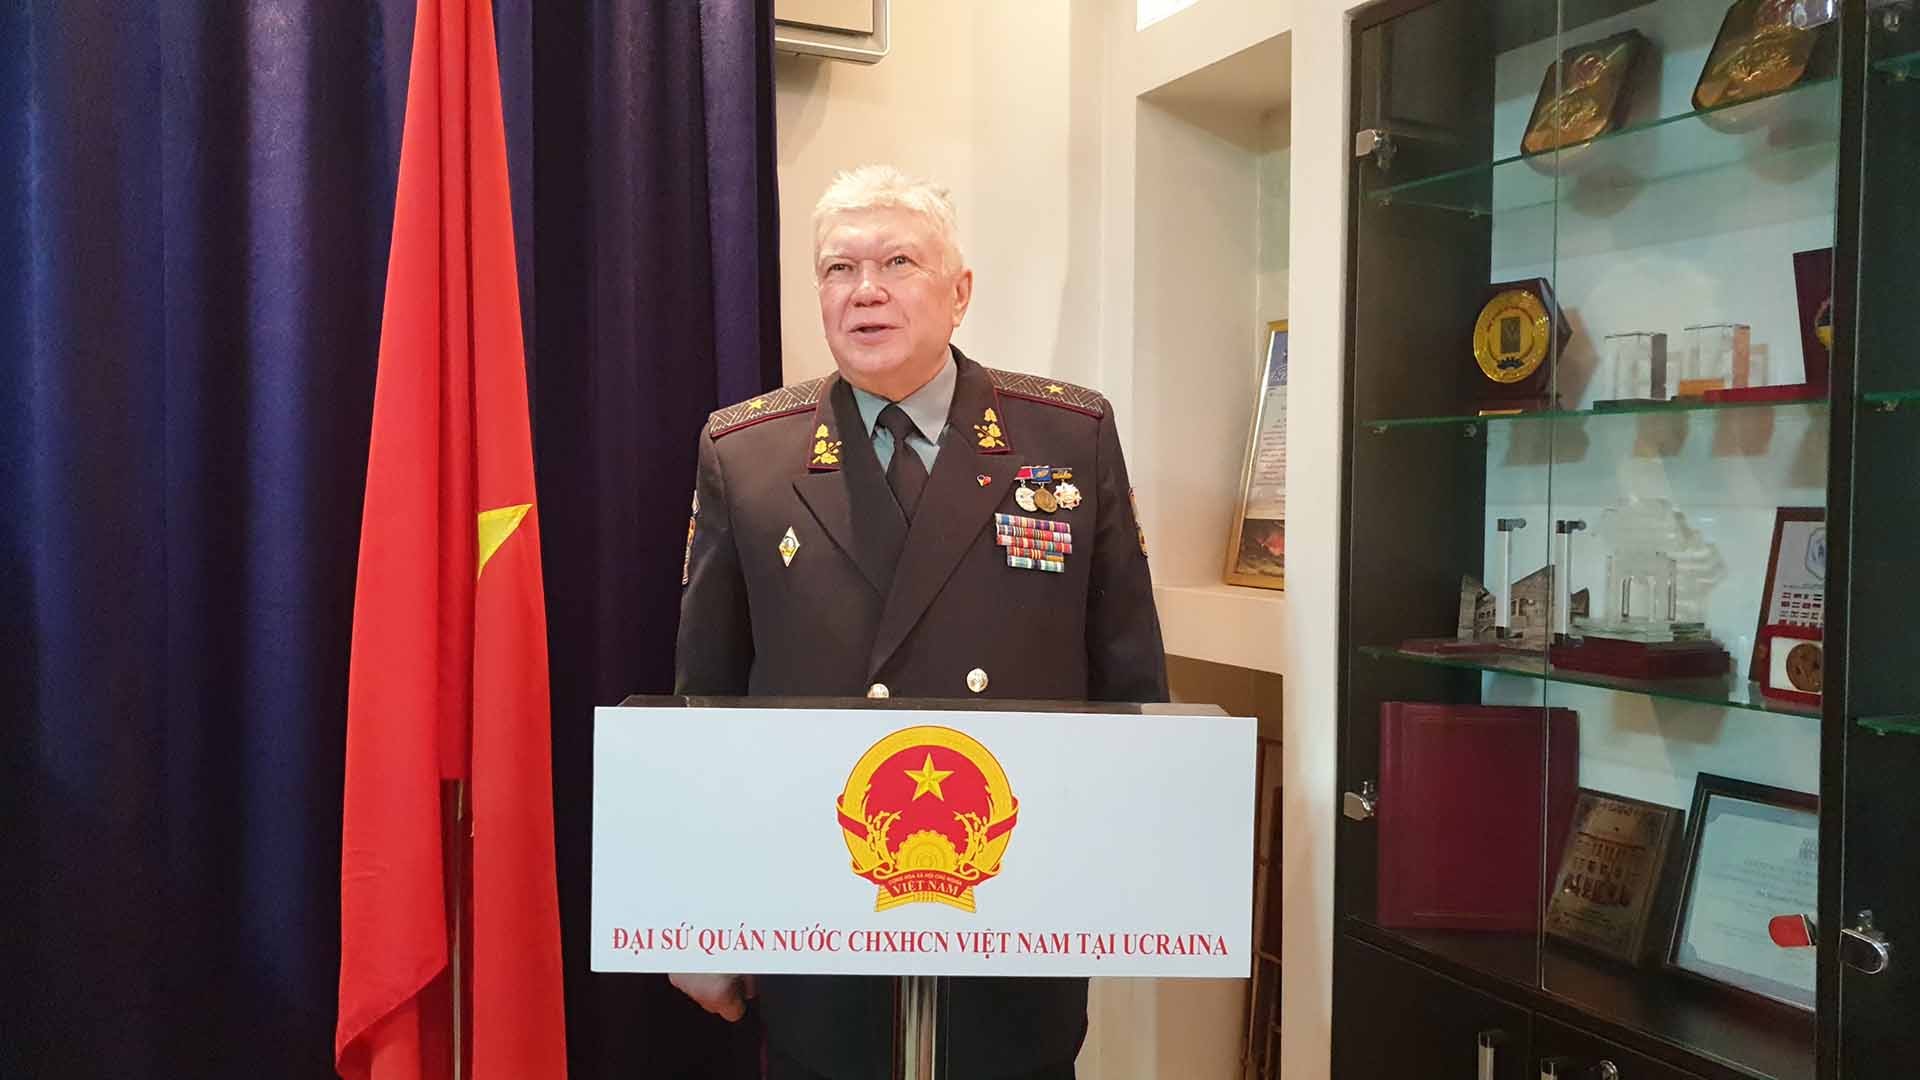 Thiếu tướng Popovich Vladimir Vasilievich, Chủ tịch Hội Cựu chiến binh Ukraine phát biểu tại Lễ kỷ niệm.